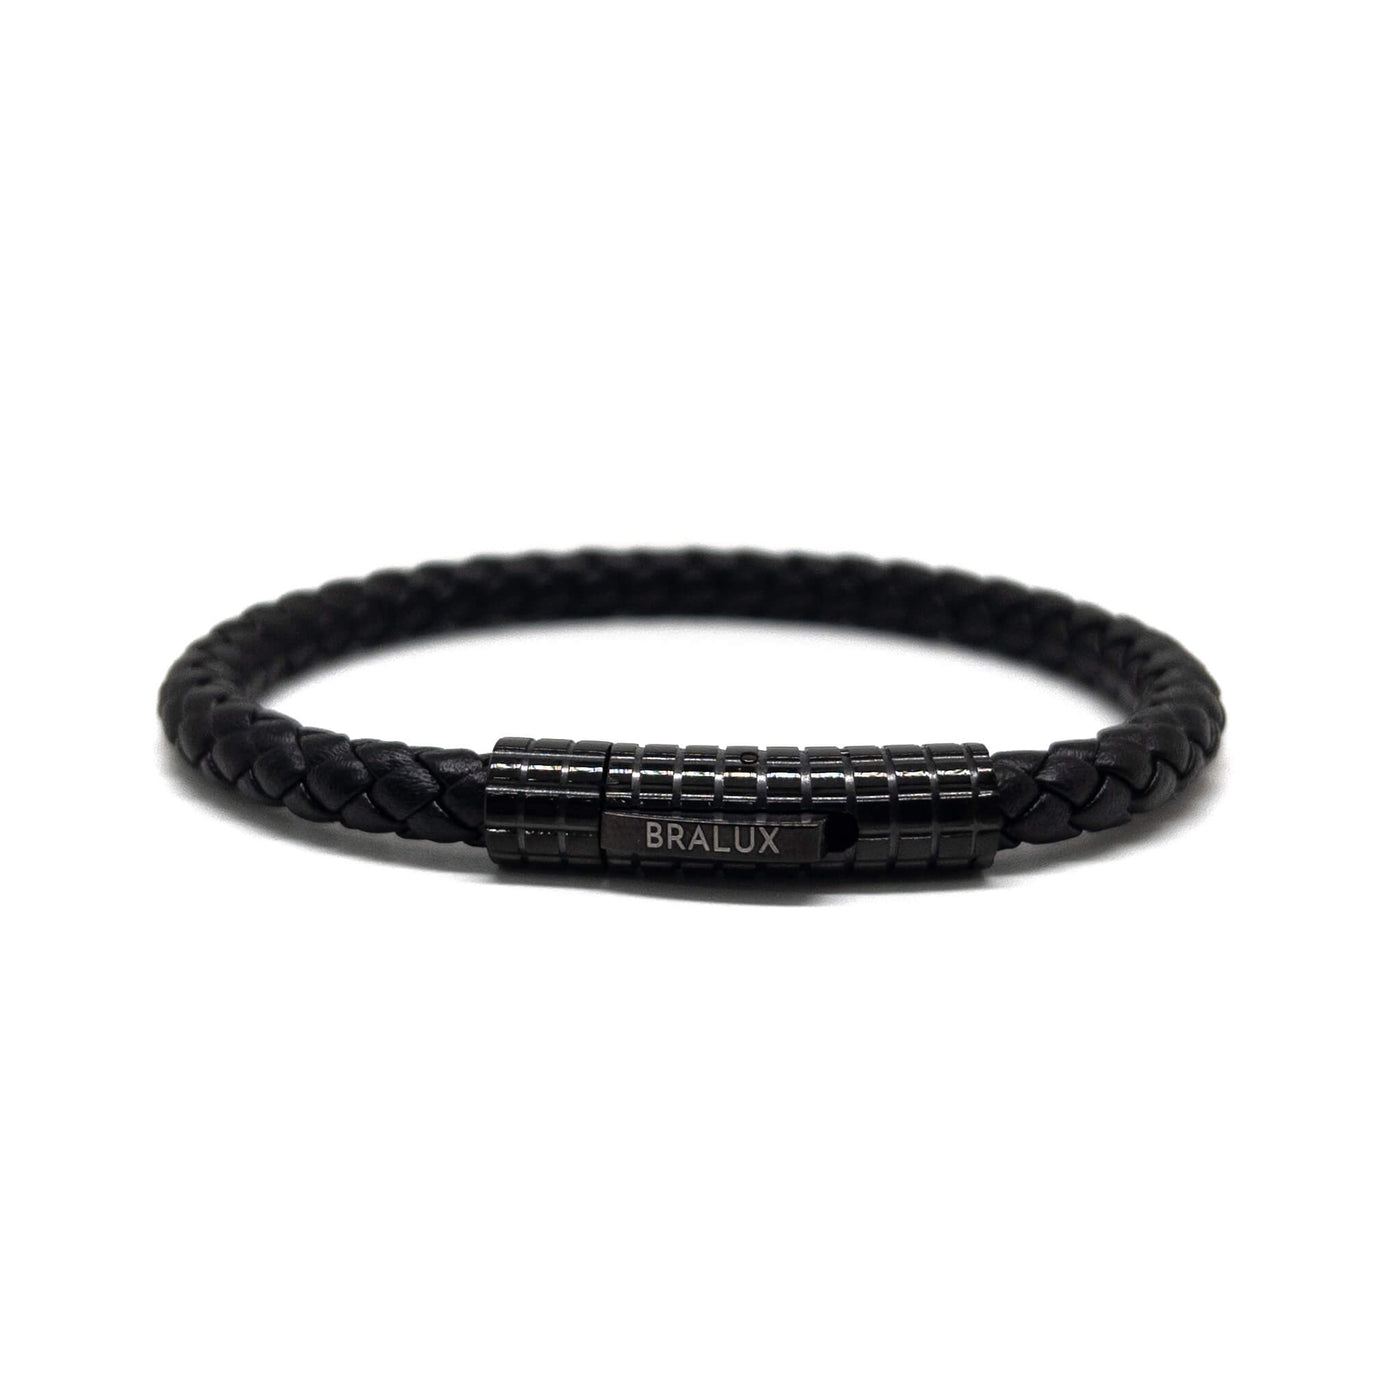 The Full Black Leather Bracelet